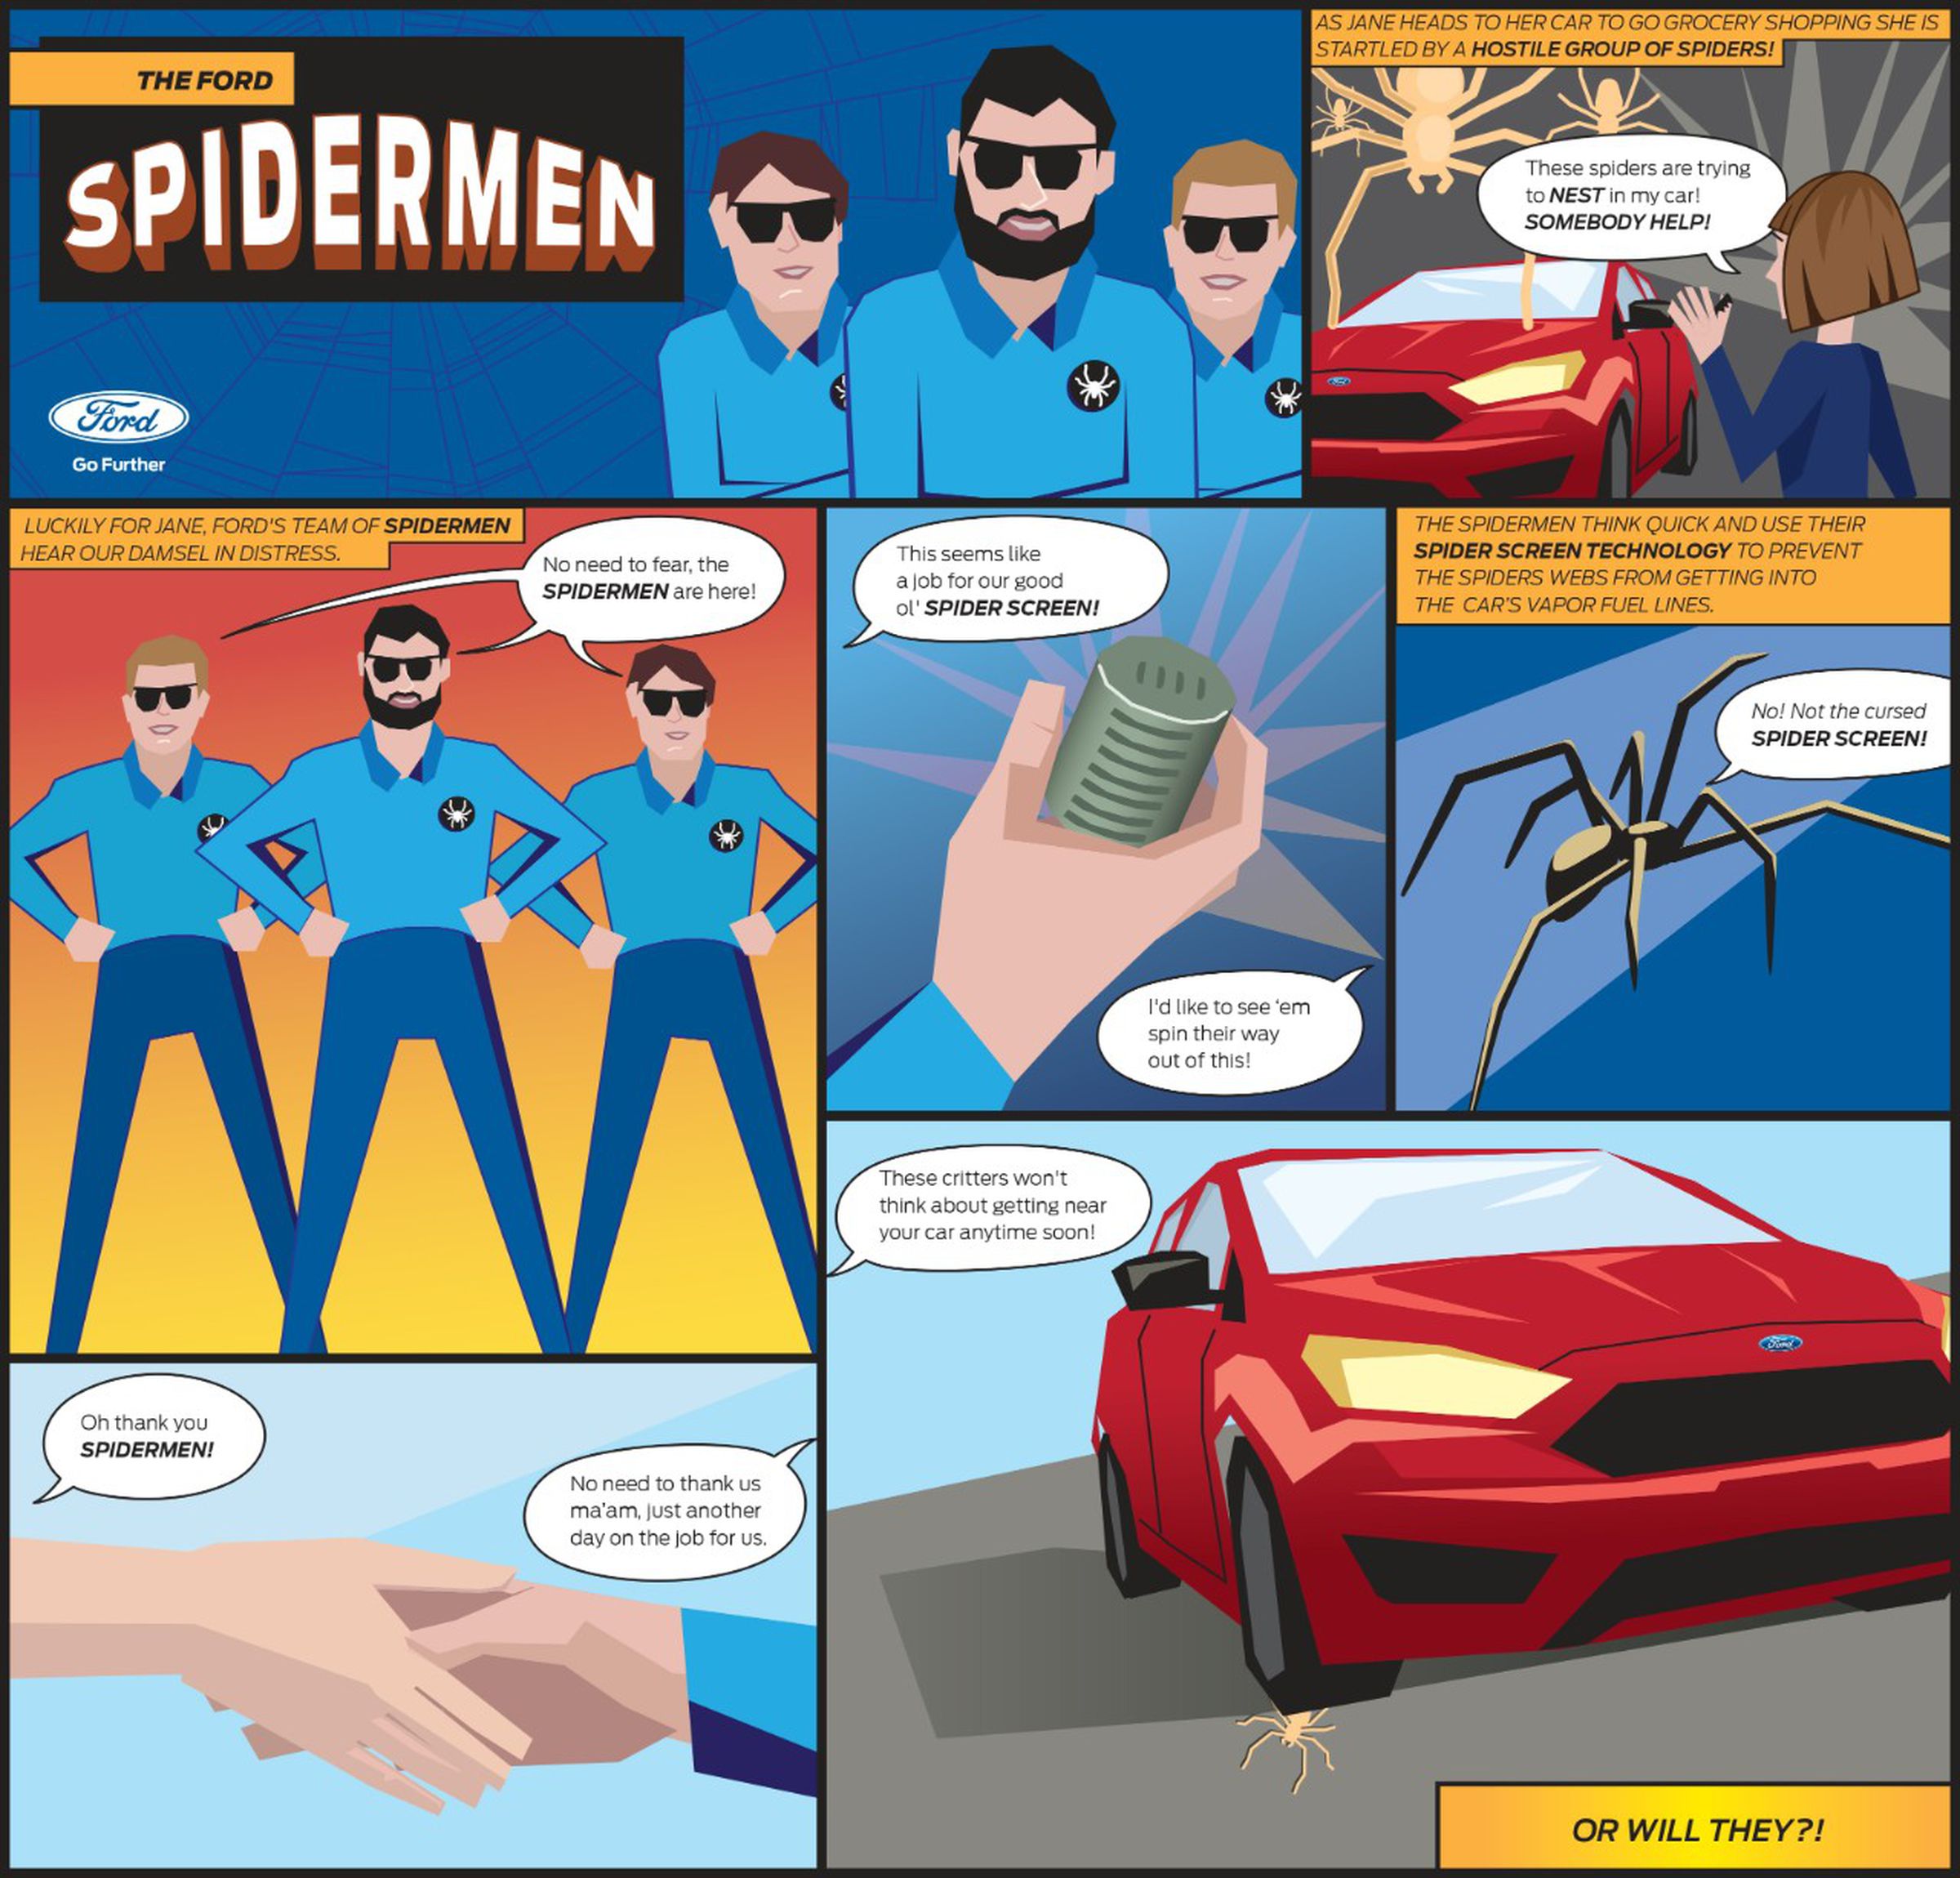 Ford spidermen